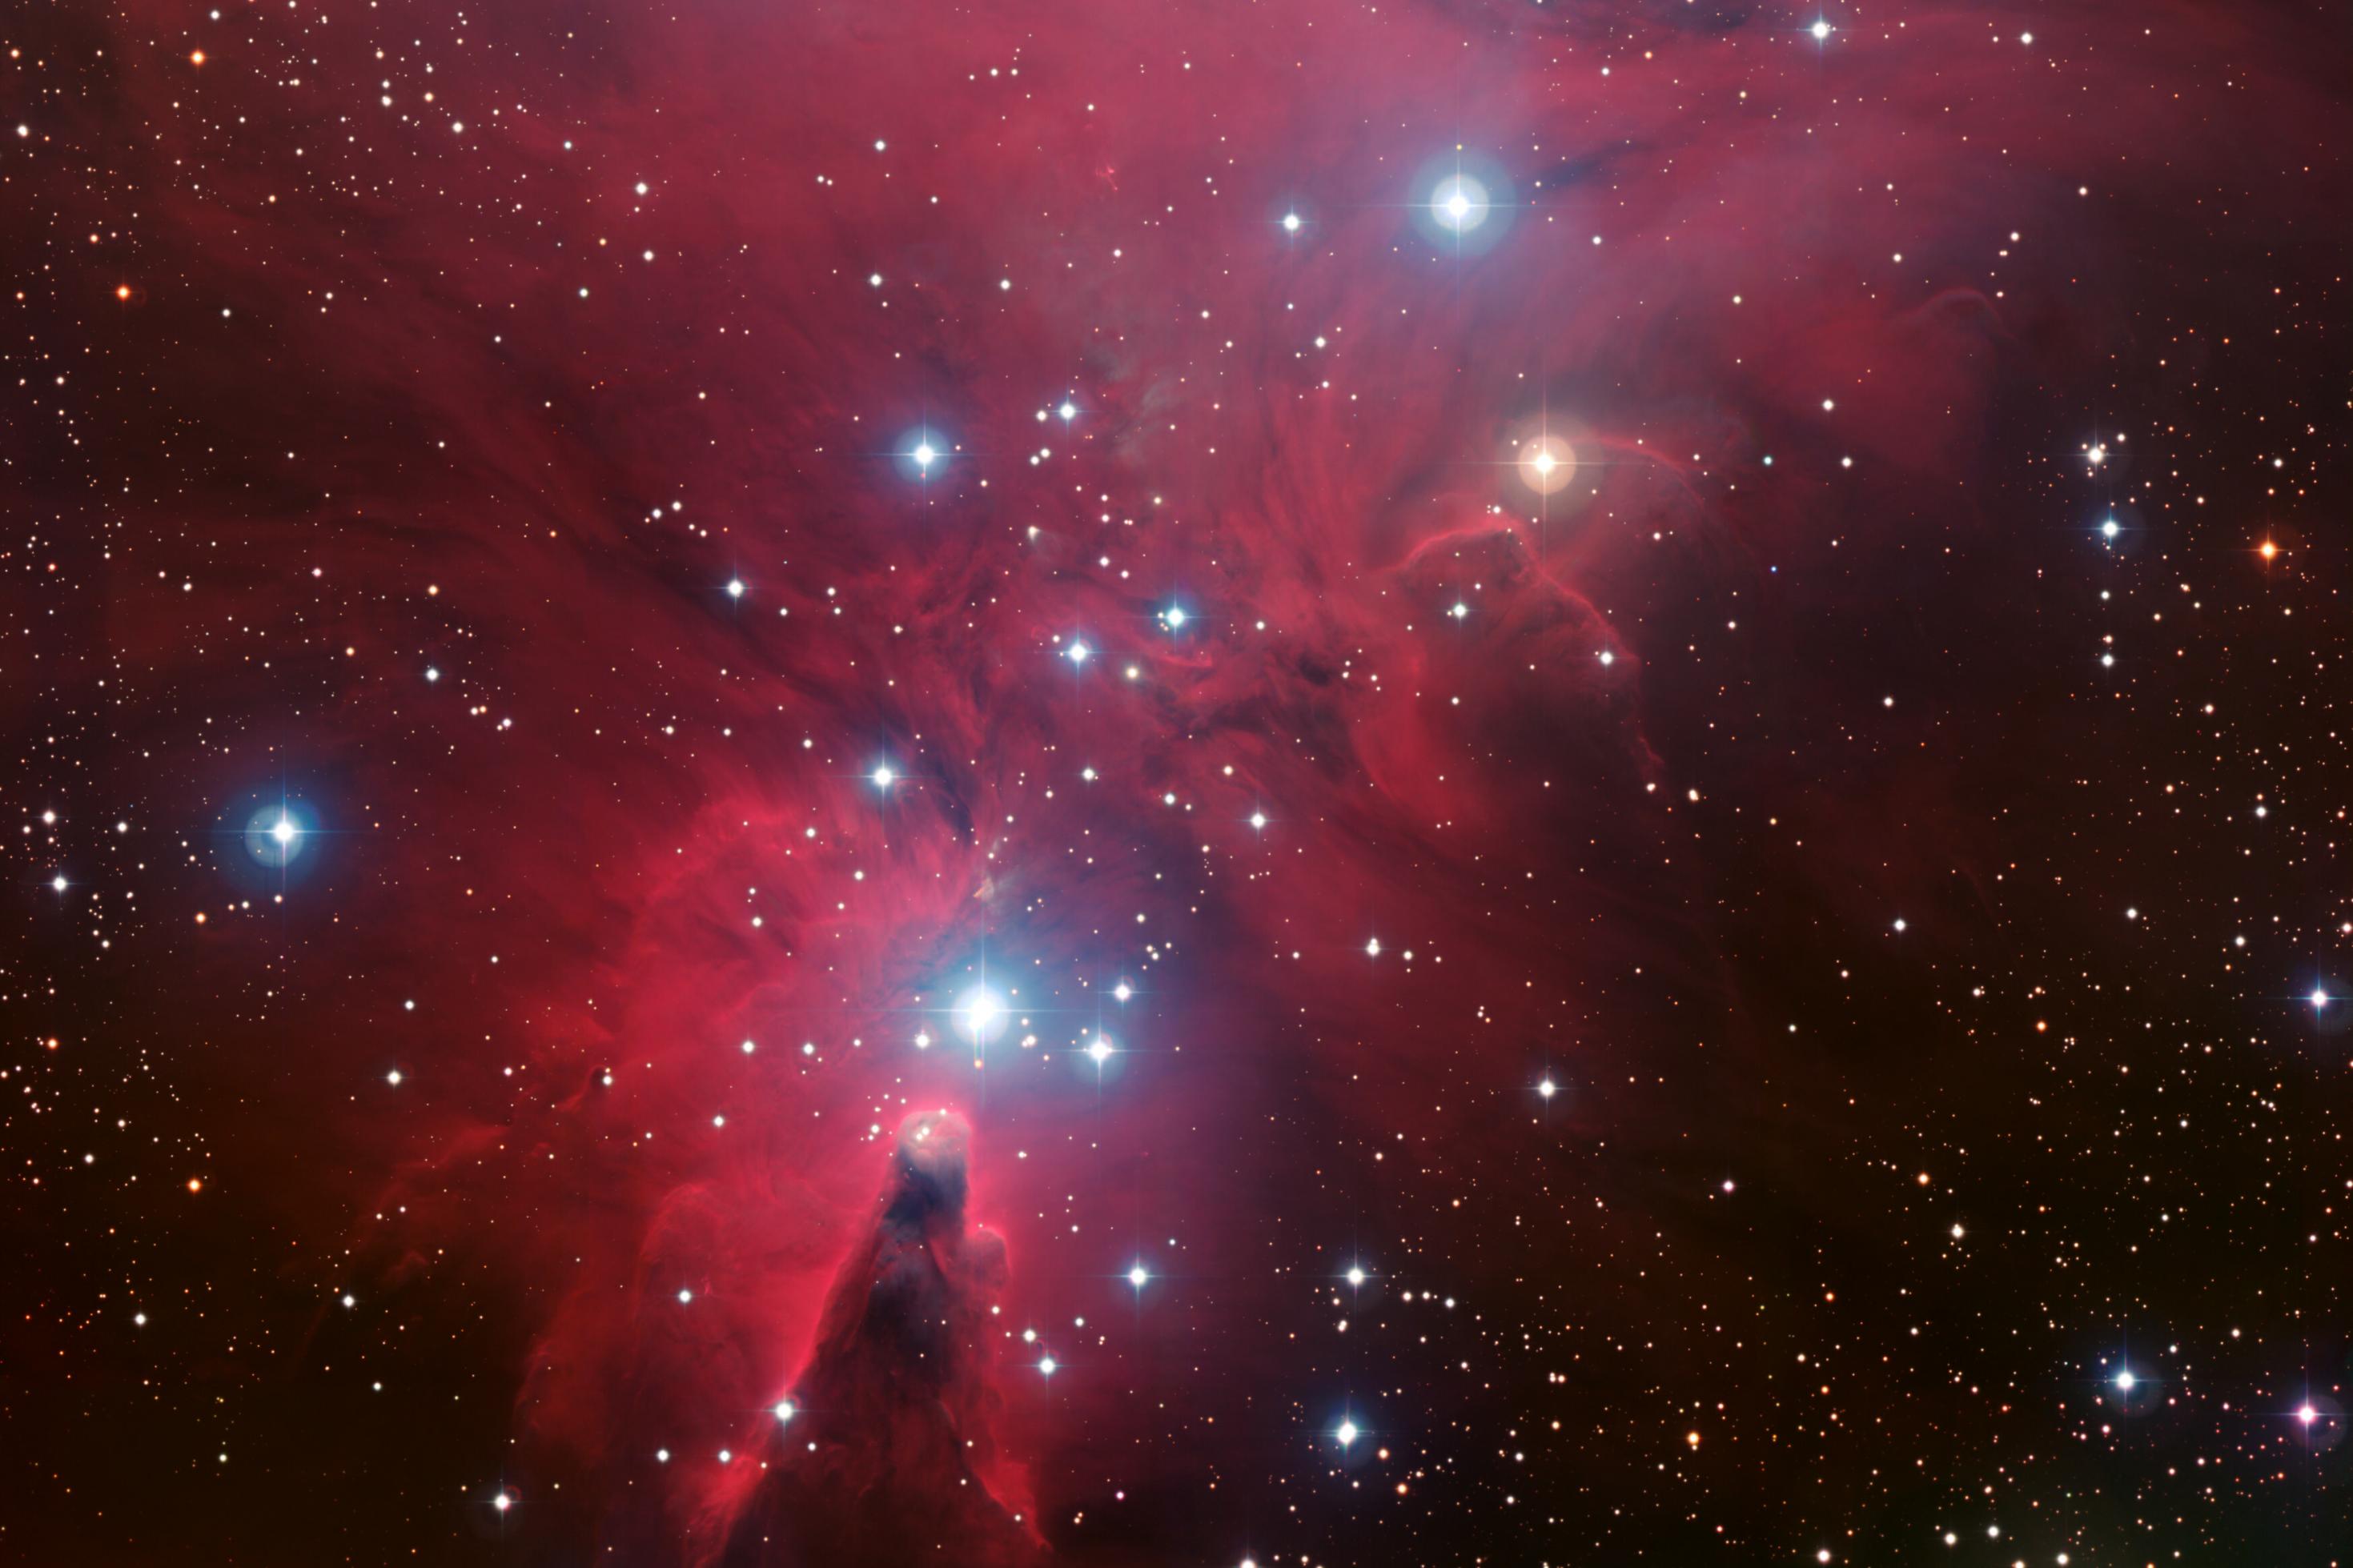 Eine rötliche Nebelregion mti interstellarer Materie bezeichnet als NGC 2264, im Vordergrund prangen helle bläuliche Sterne.